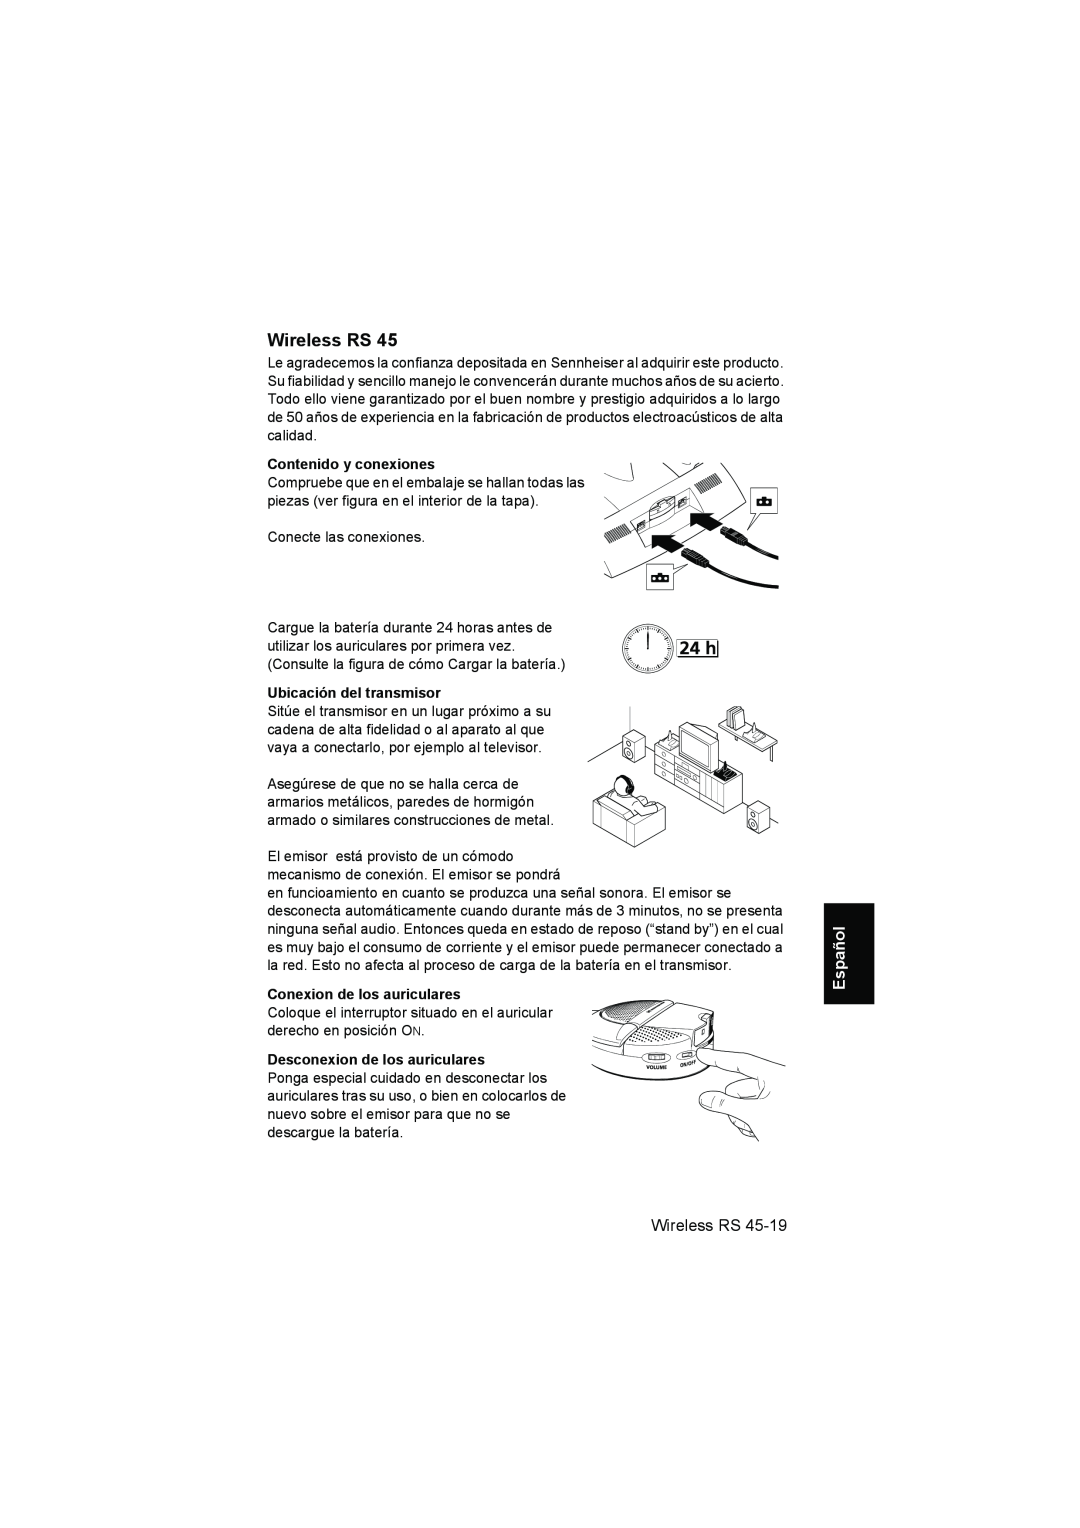 Sennheiser RS 40 Español, Contenido y conexiones, Ubicación del transmisor, Conexion de los auriculares, Wireless RS 